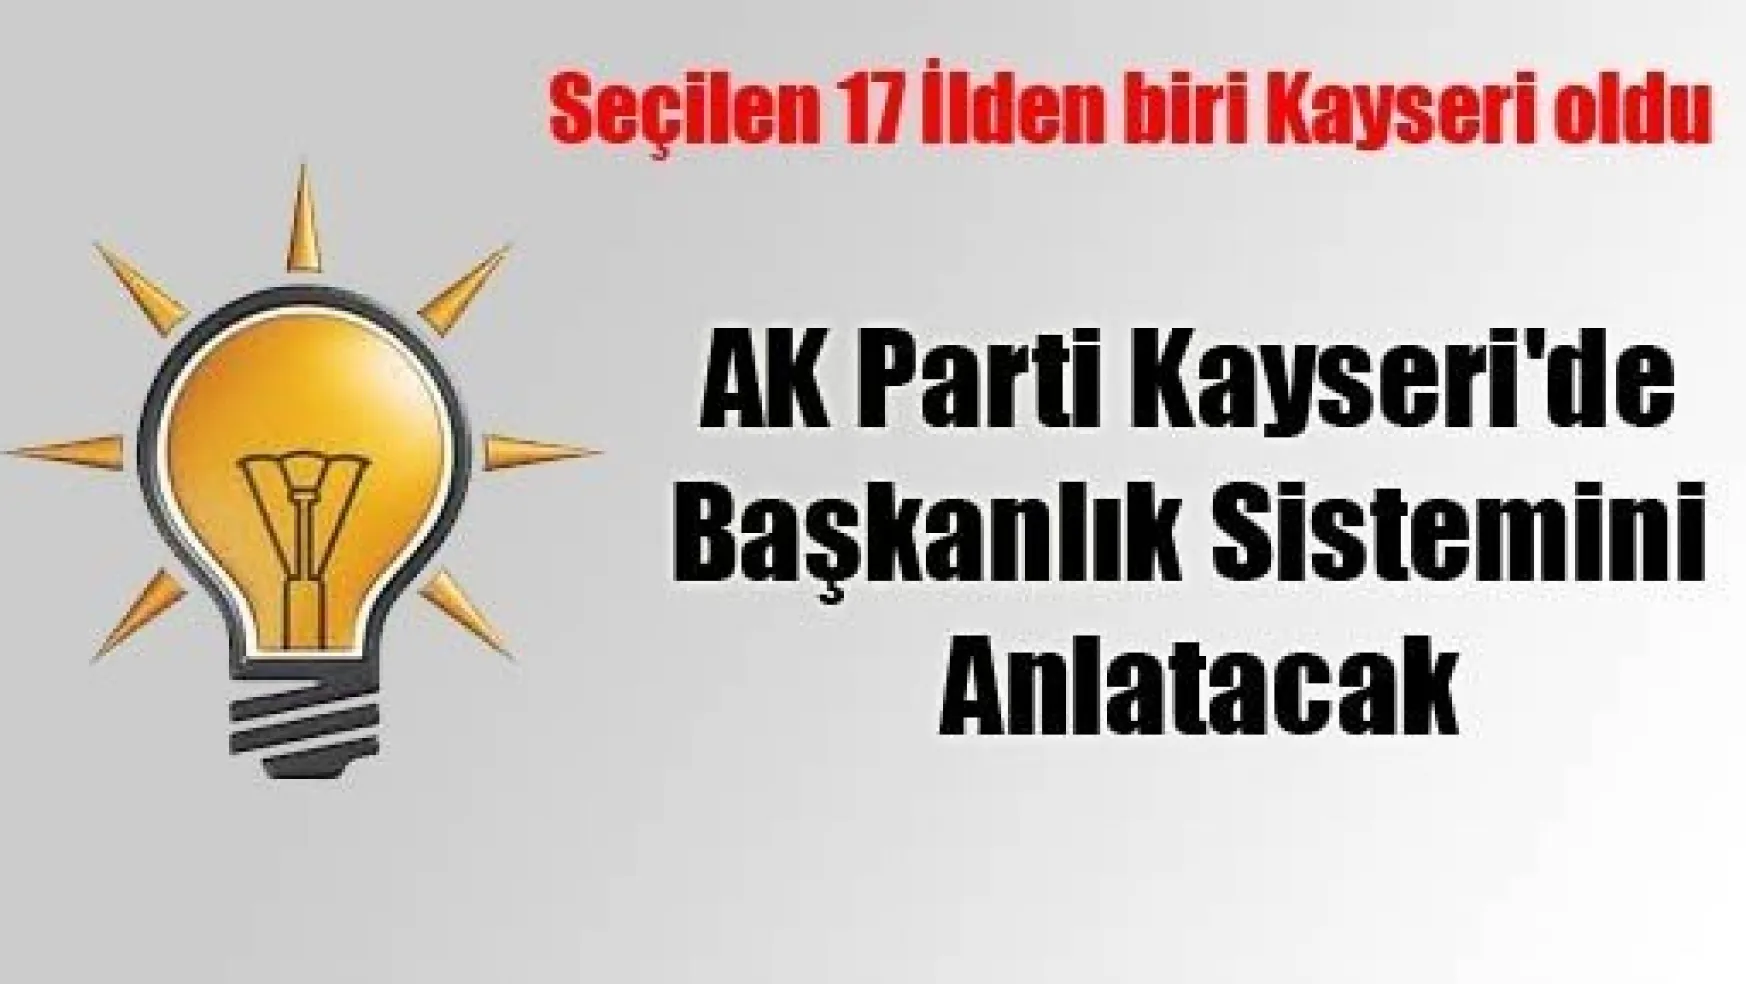 AK Parti Kayseri'de Başkanlık Sistemini Anlatacak